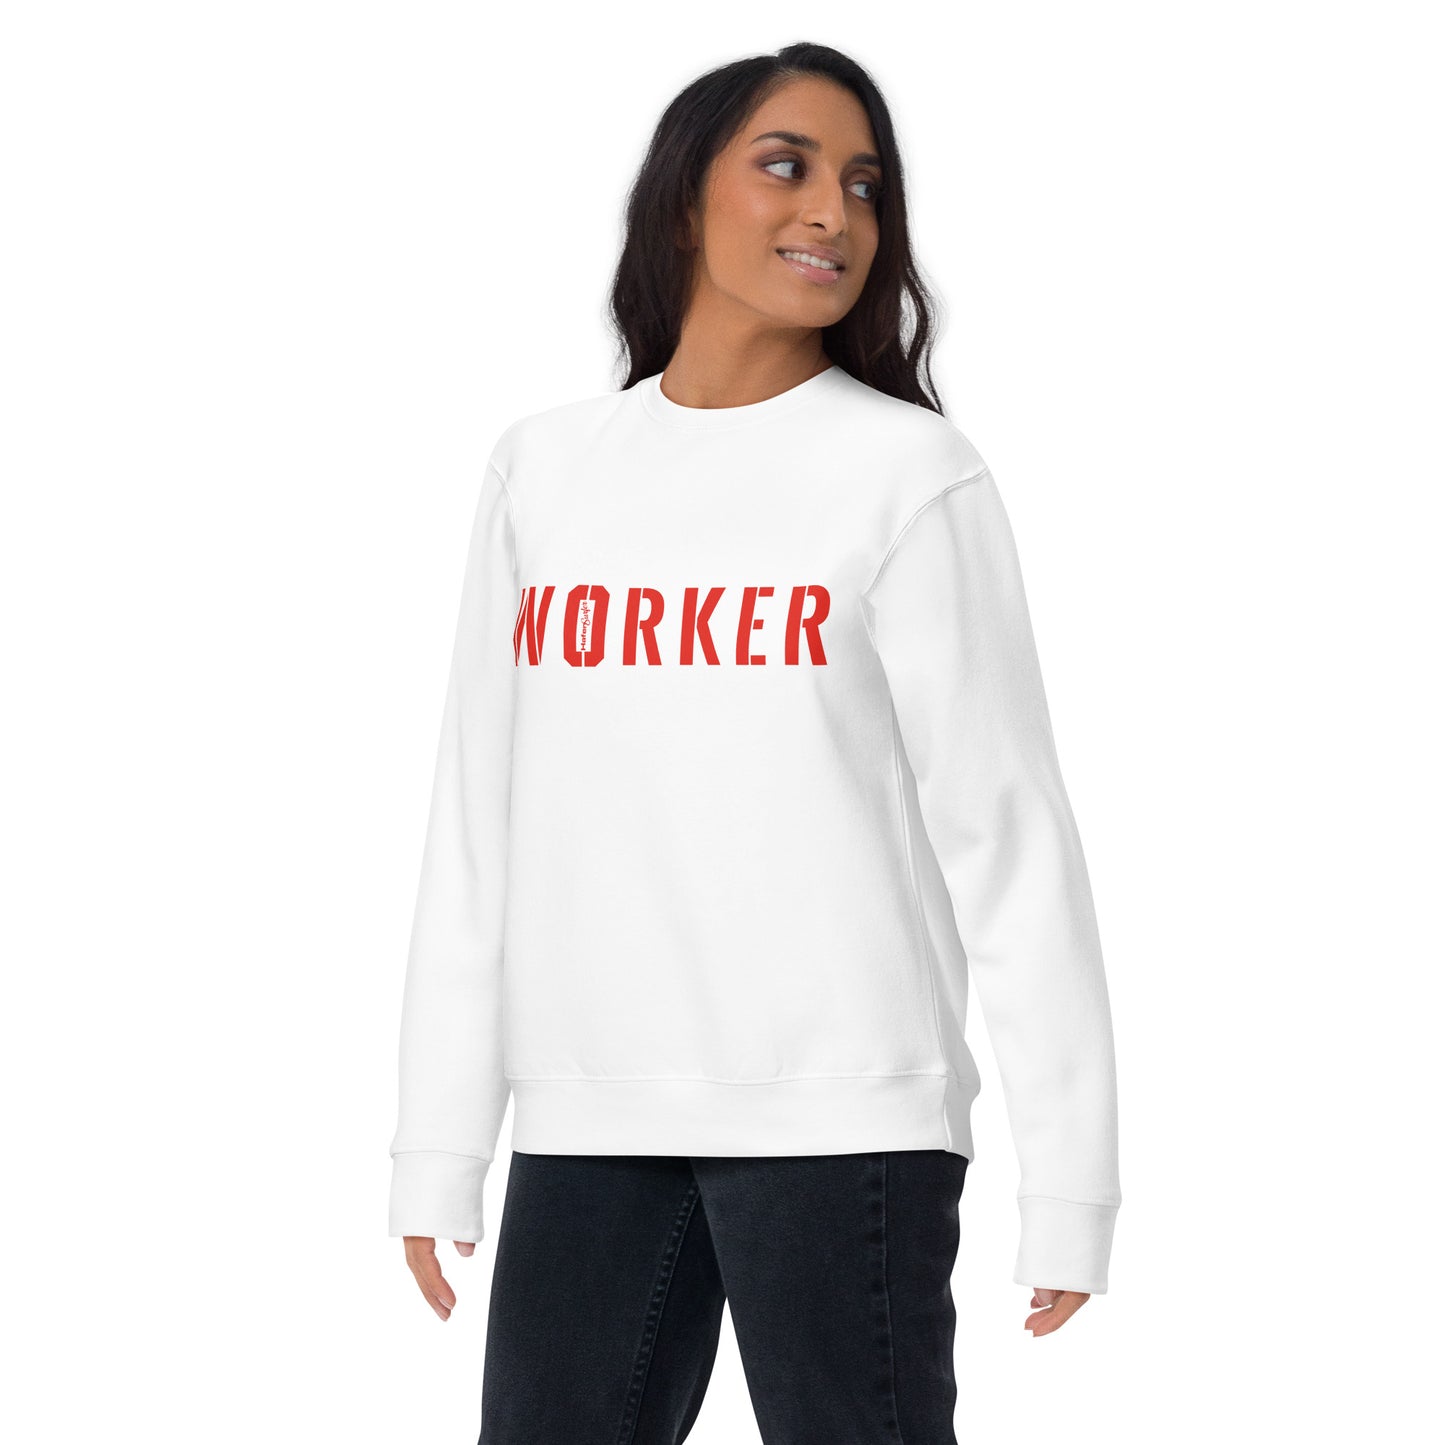 Hafensurfer Unisex Premium Sweatshirt WORKER